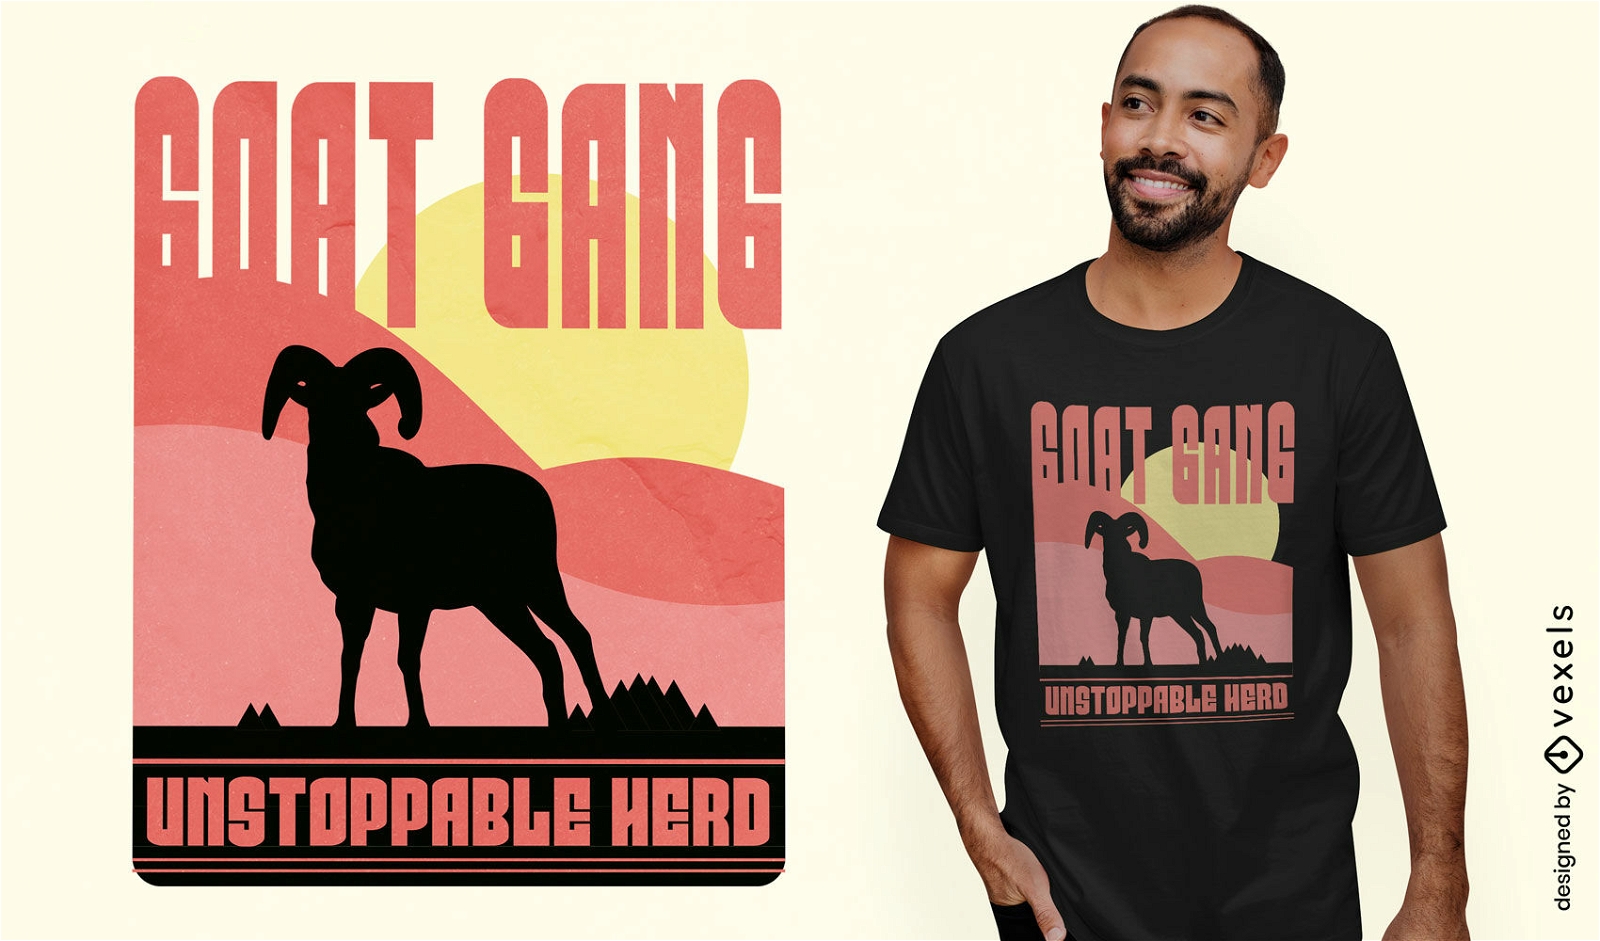 Goat gang t-shirt design